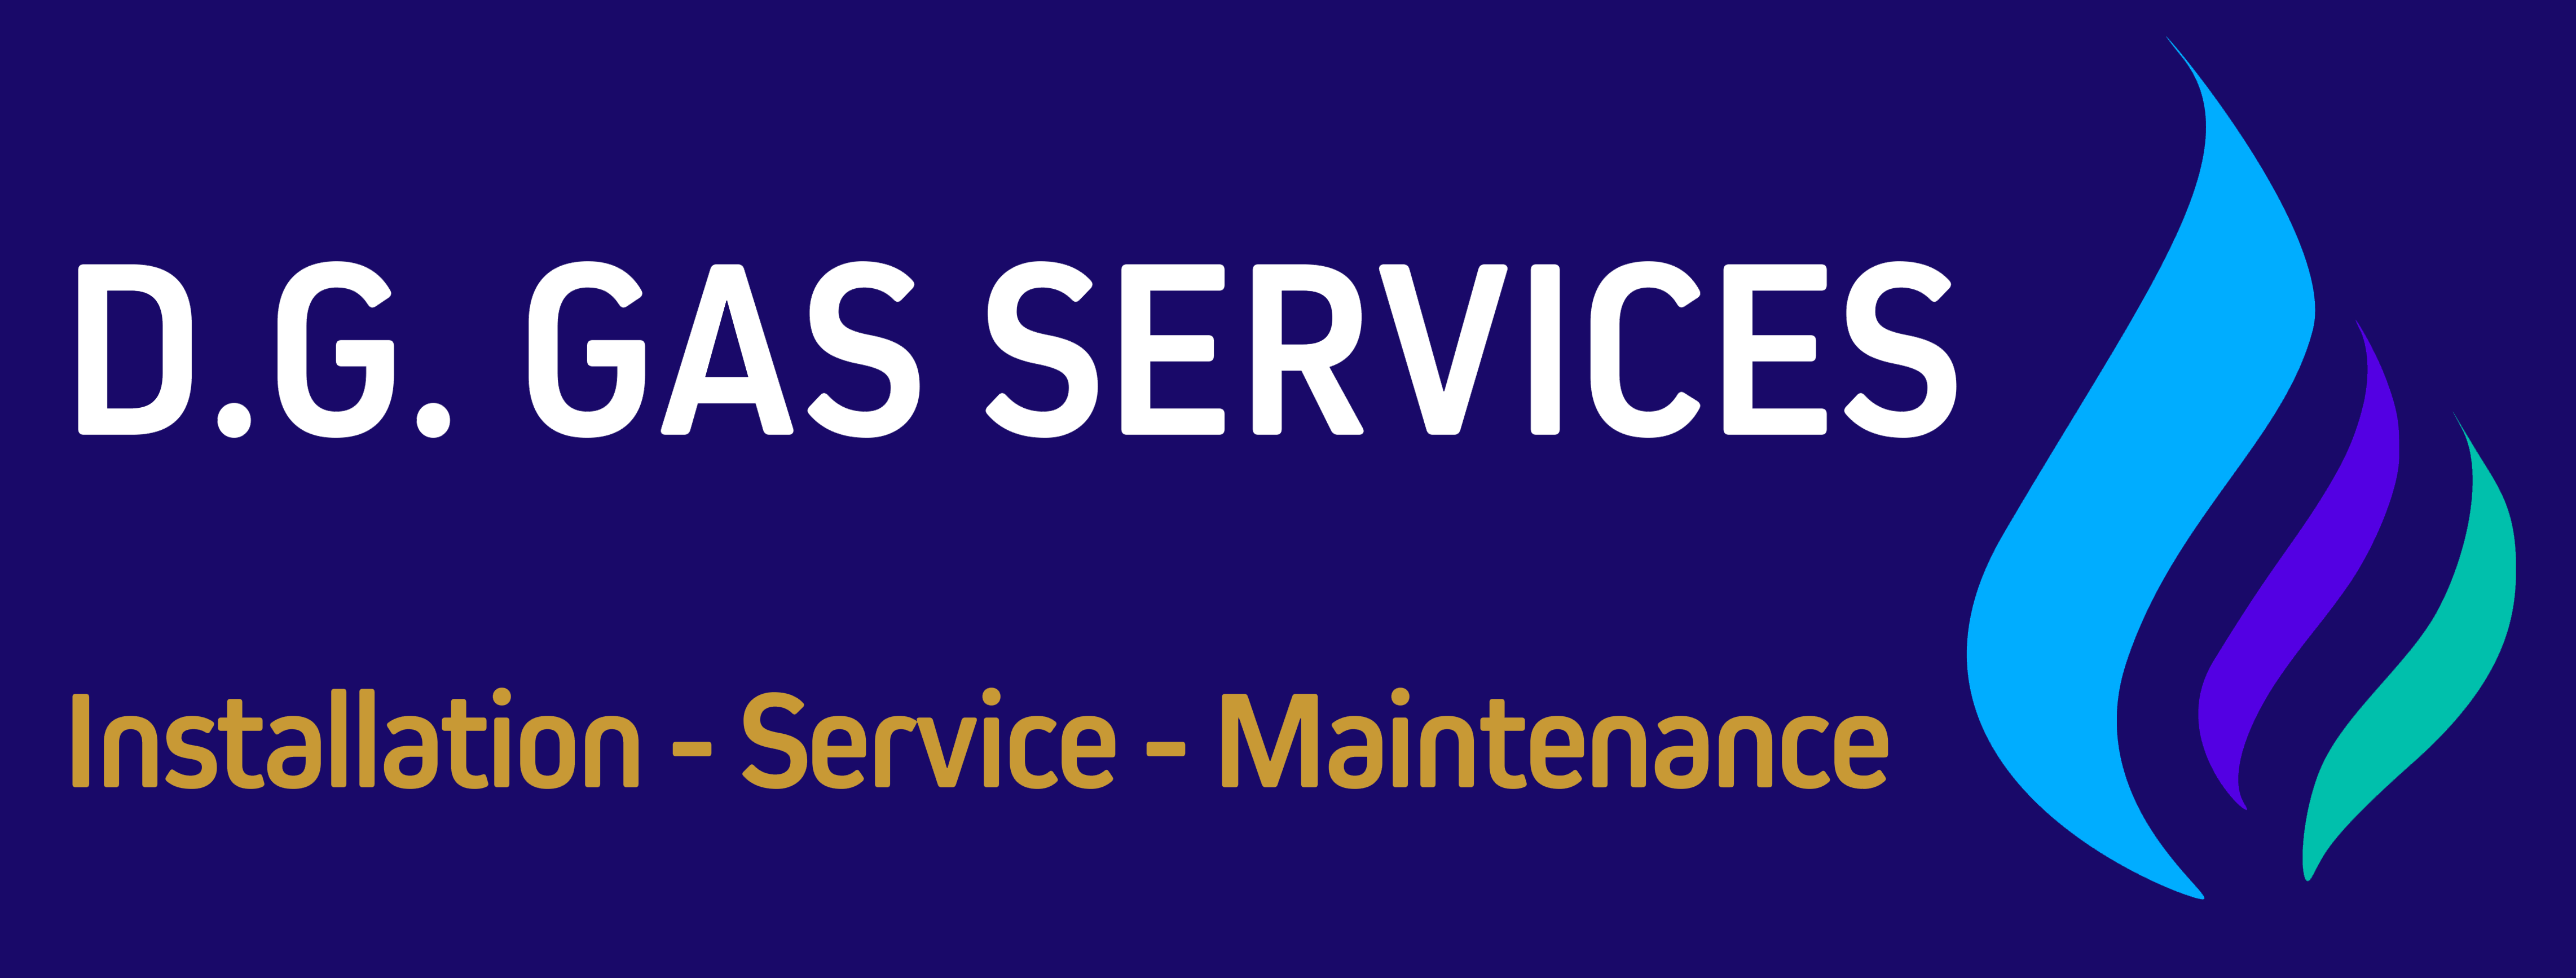 DG Gas Services Ltd